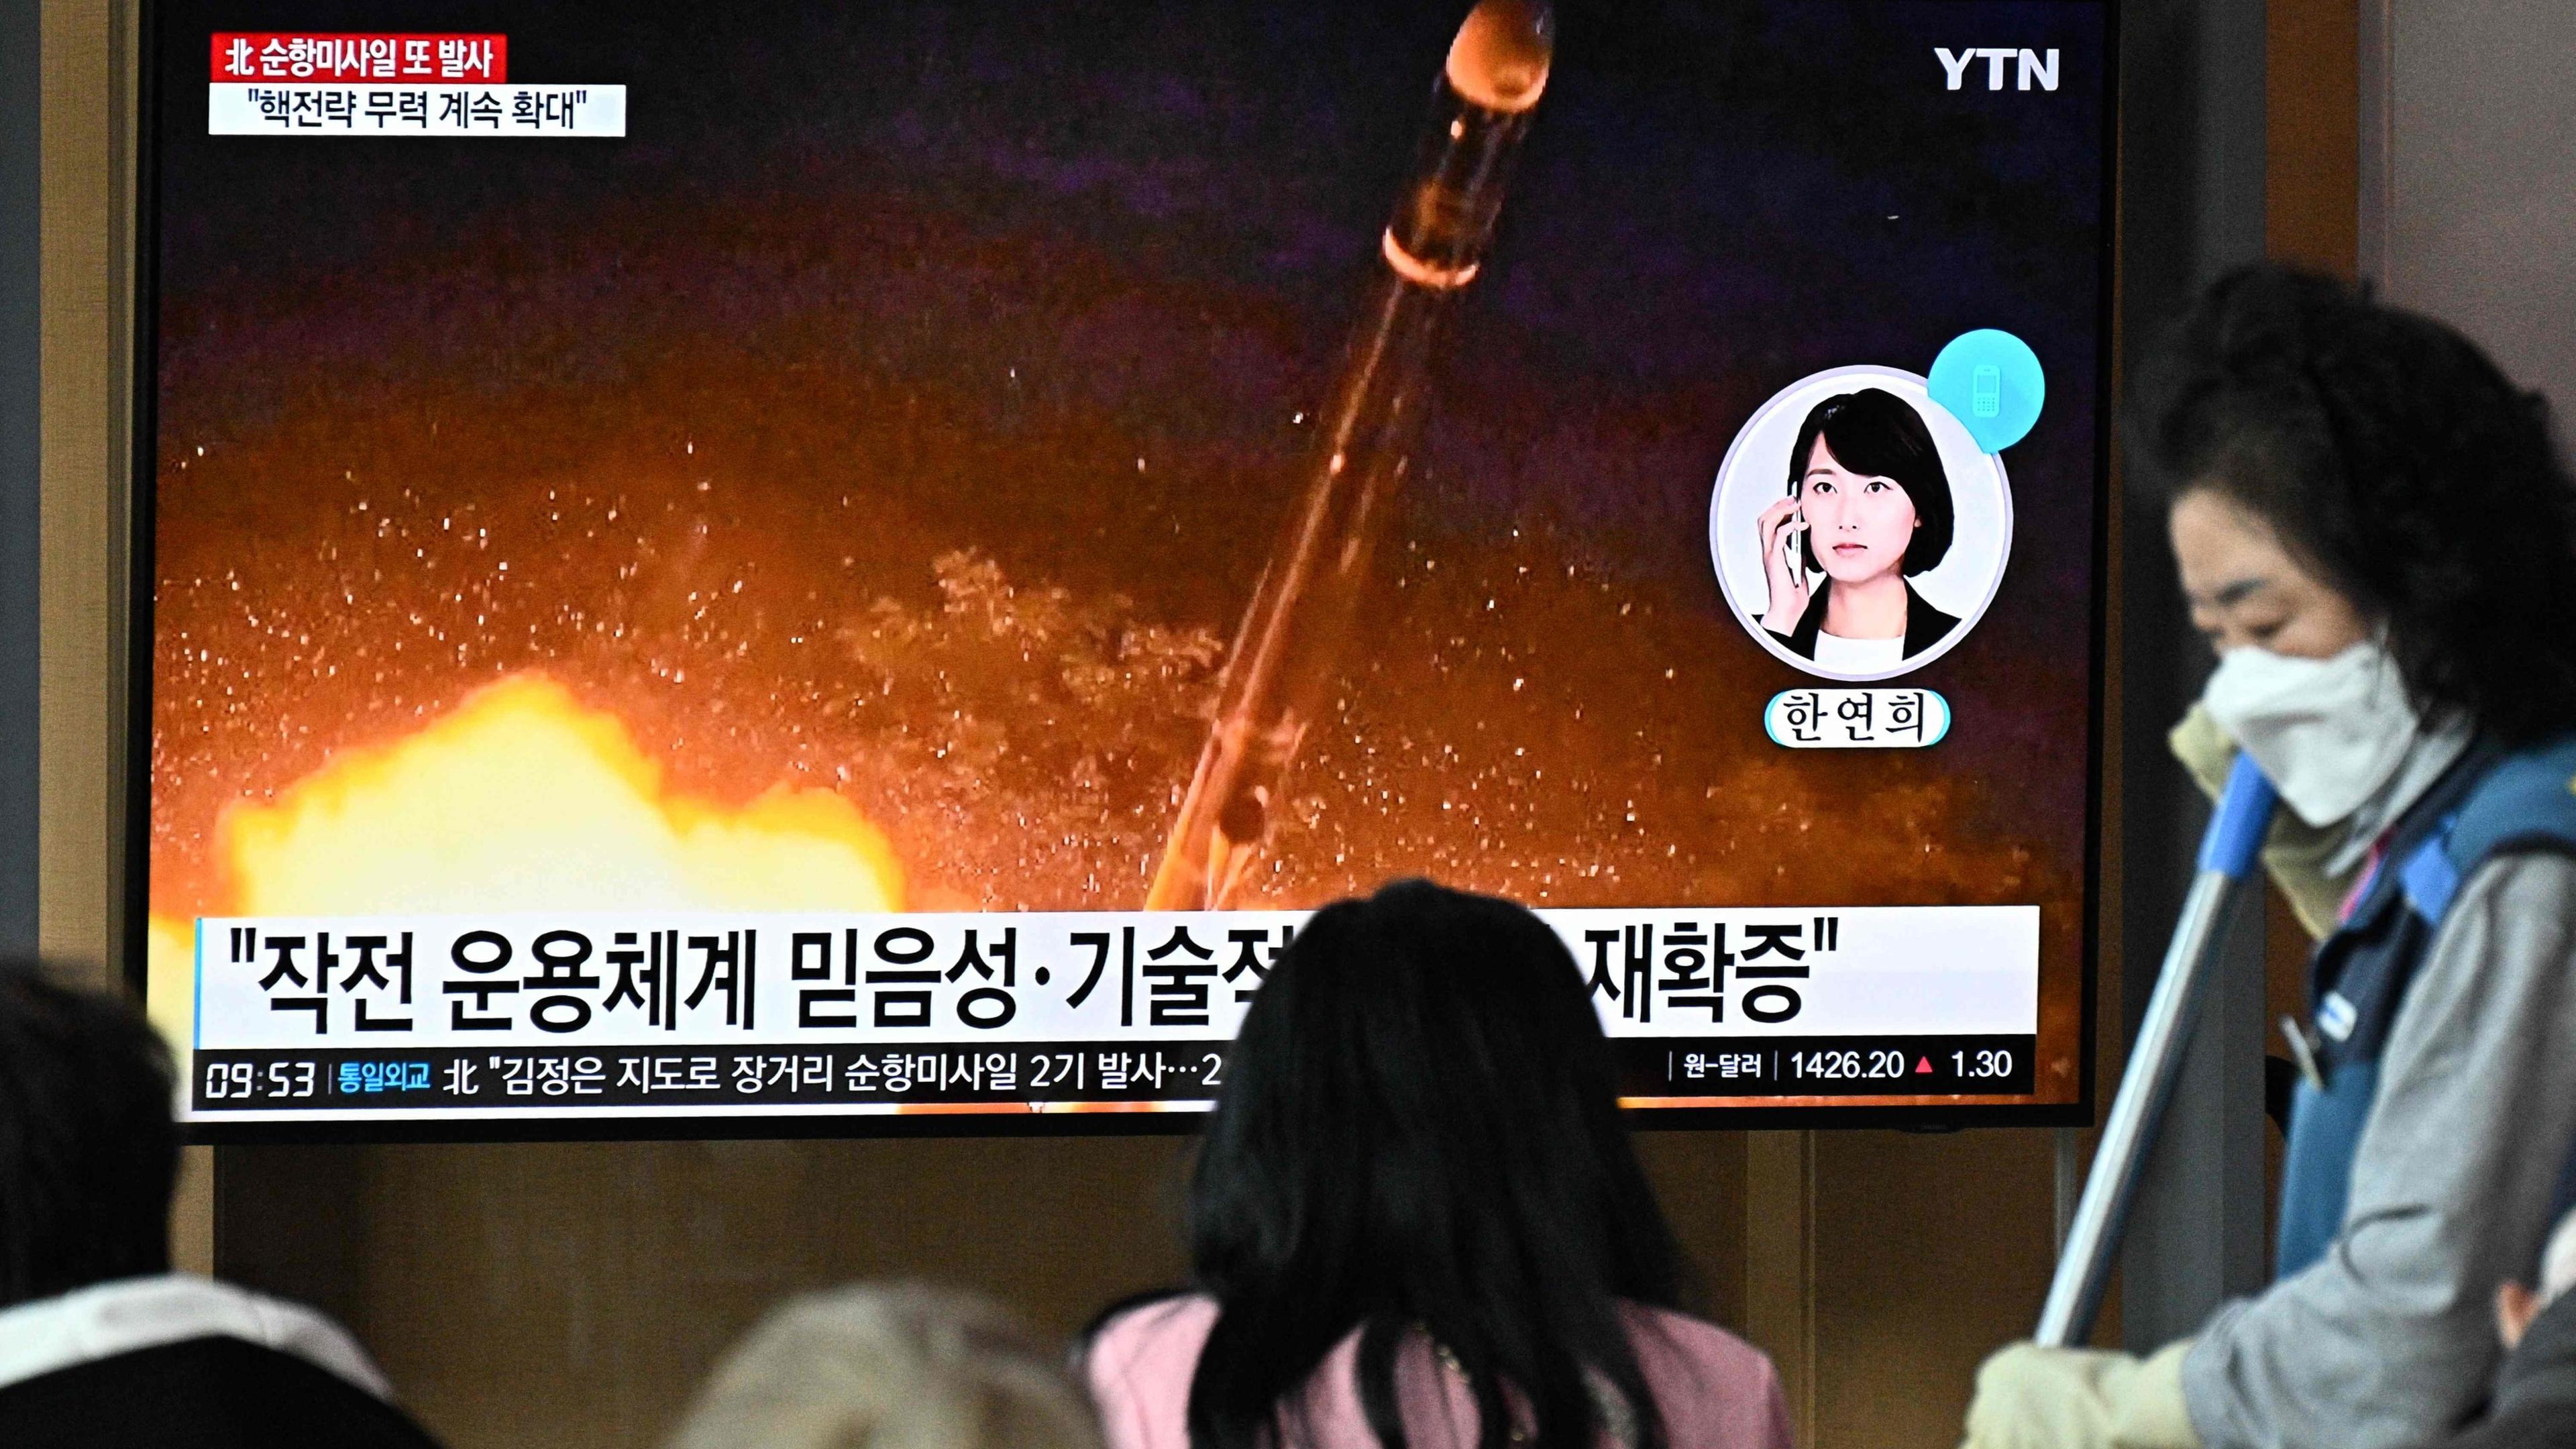 Nordkorea hat seine Serie von Raketentests trotz internationaler Proteste weiter fortgesetzt.